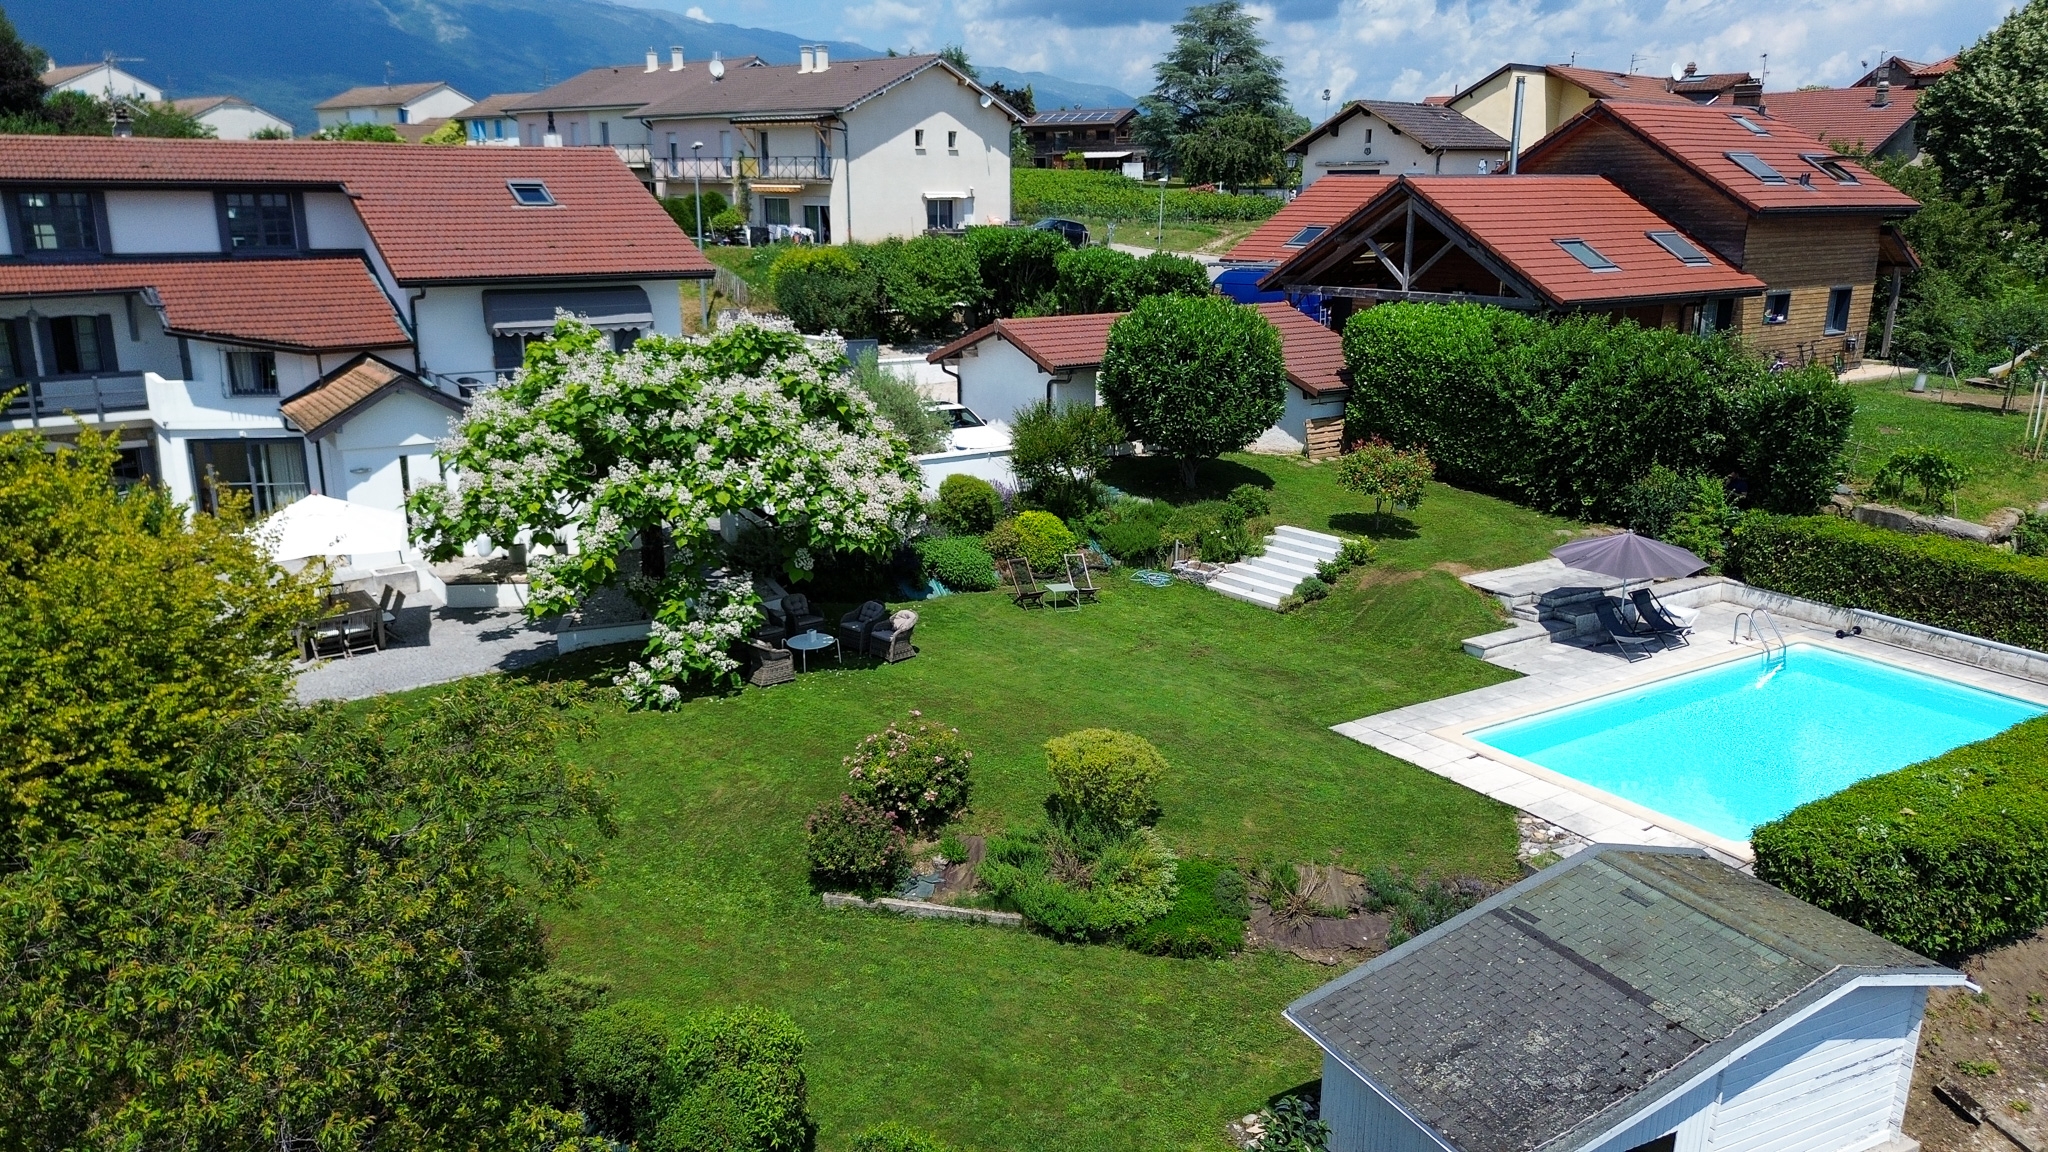 Maison de village avec deux logements - Magnifique jardin avec piscine